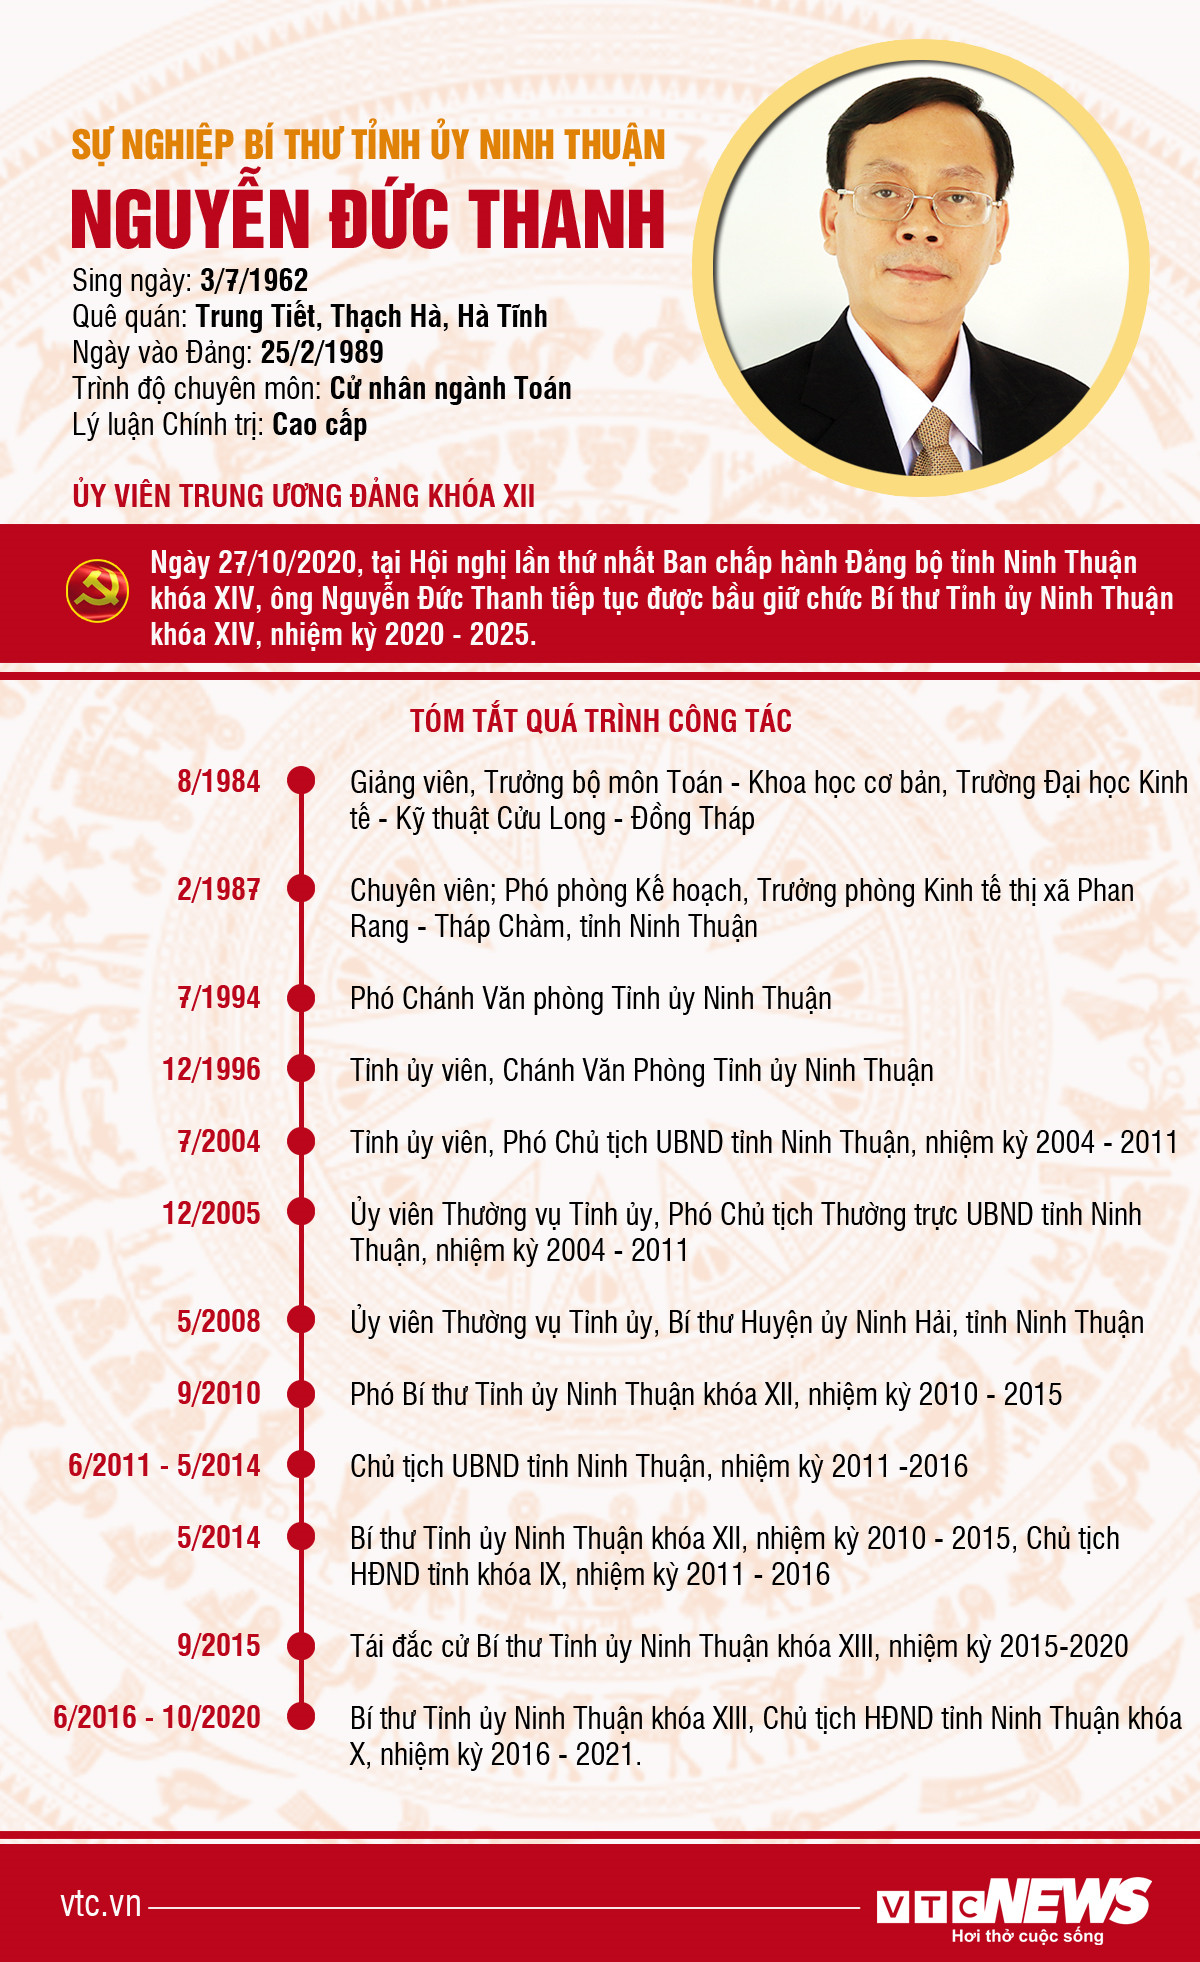 Infographic: Sự nghiệp Bí thư Tỉnh ủy Ninh Thuận Nguyễn Đức Thanh - 1